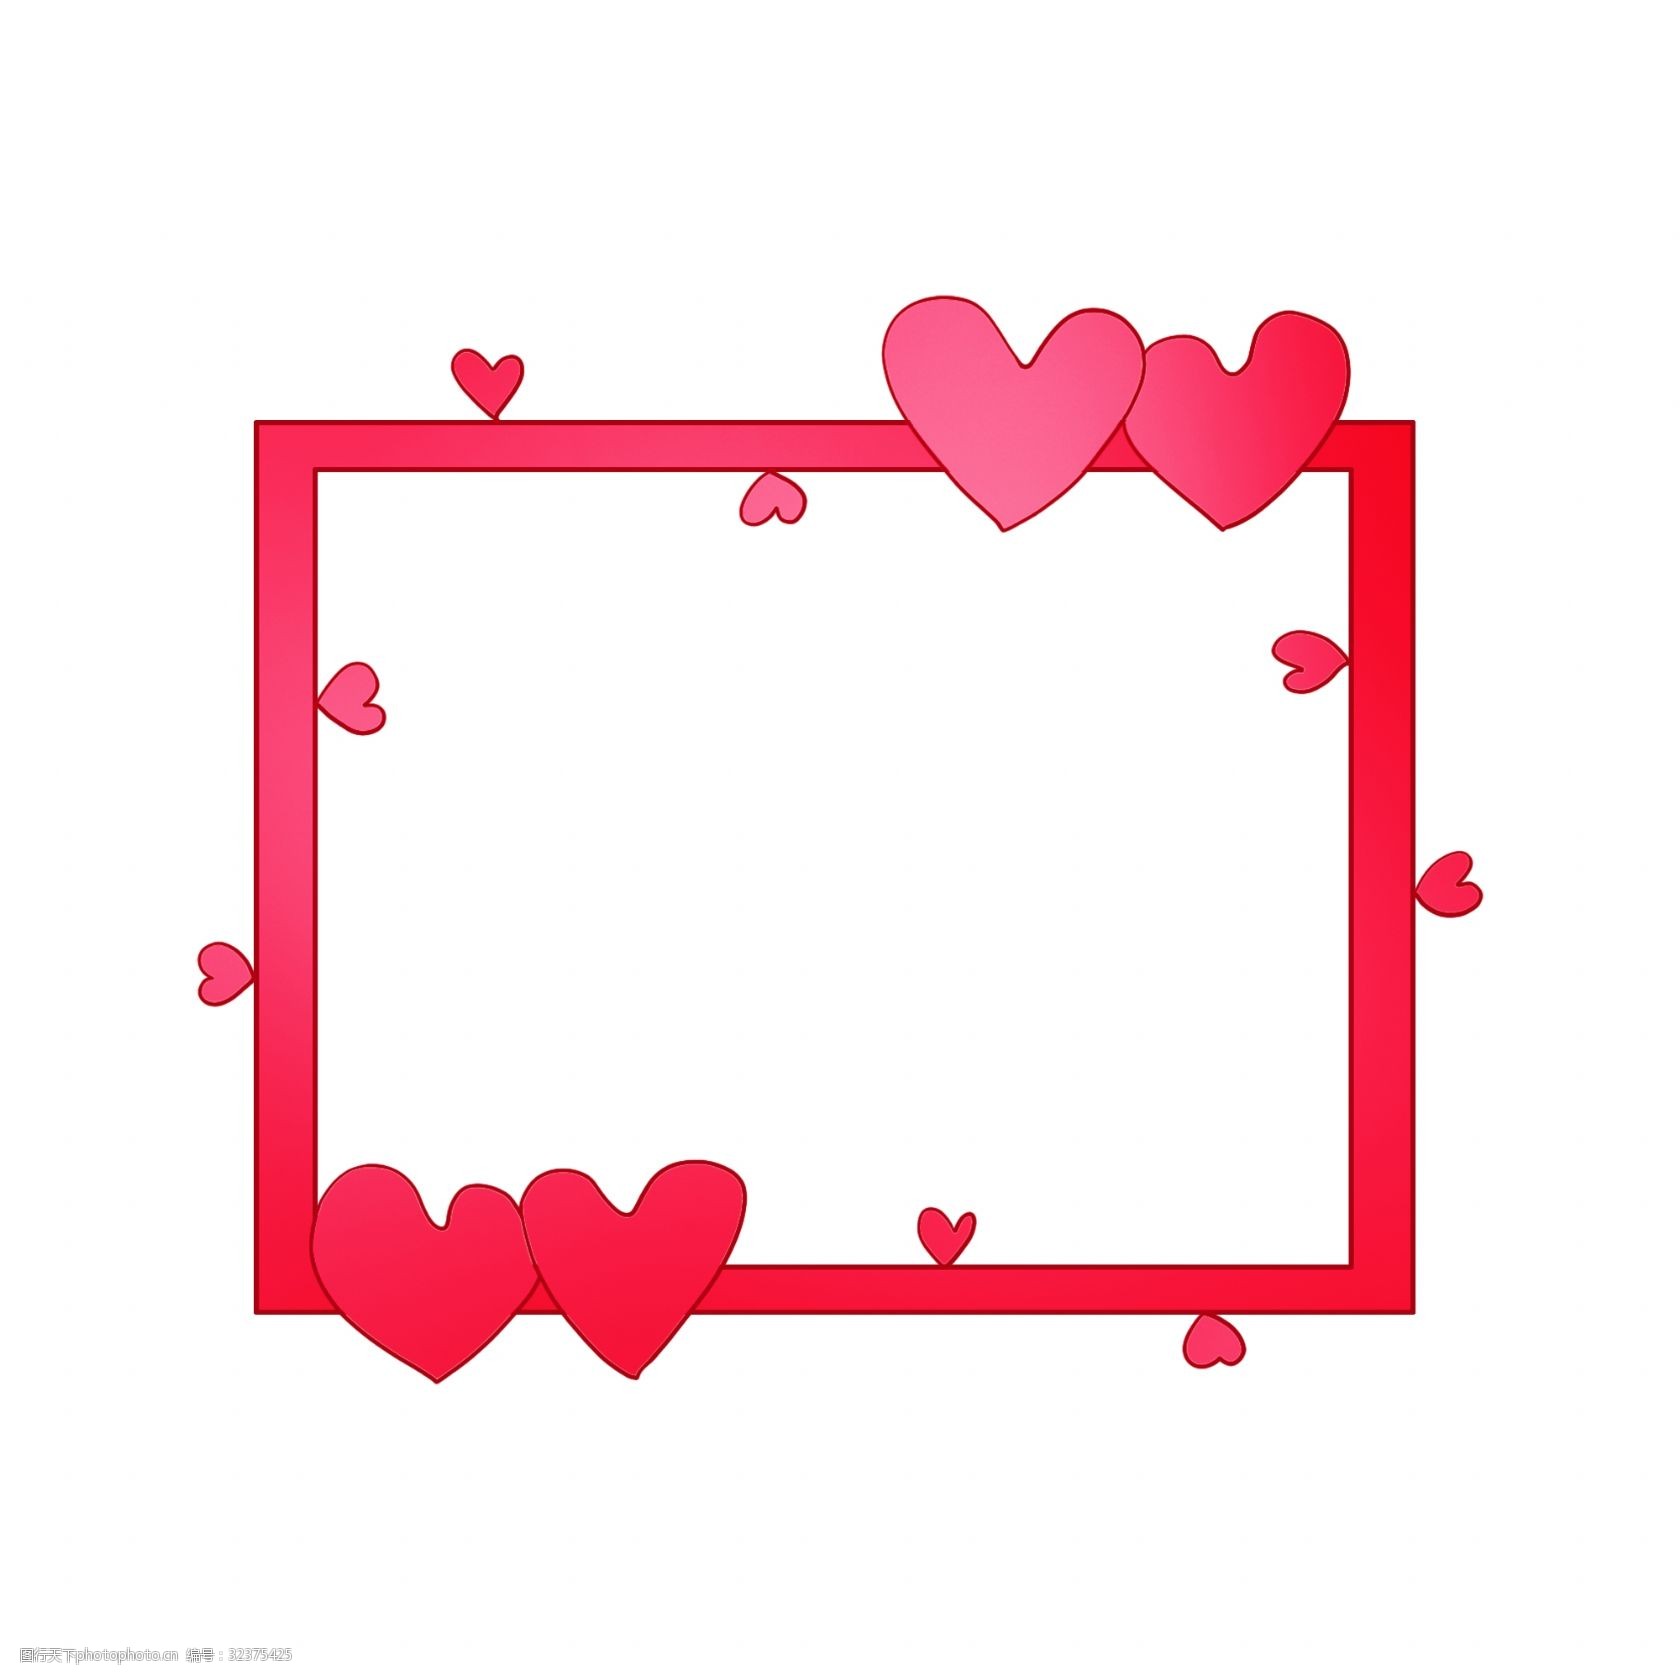 关键词:情人节爱心边框插画 情人节边框 红色的边框 爱心边框 手绘